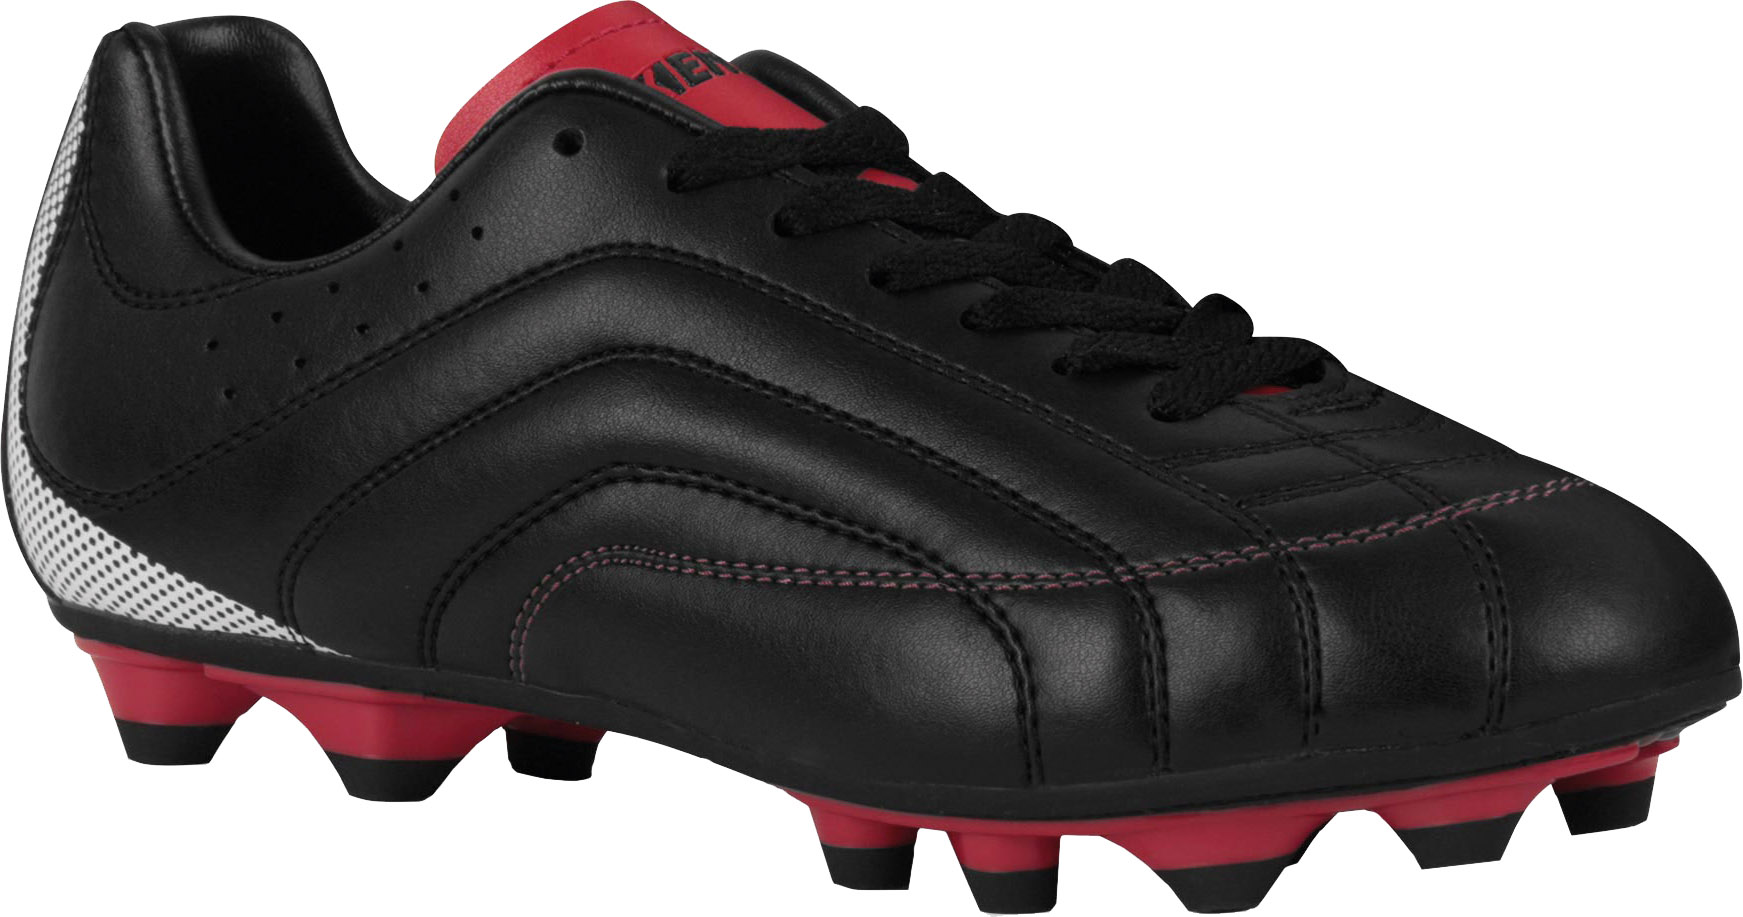 FOSTER - Men's Football Boots